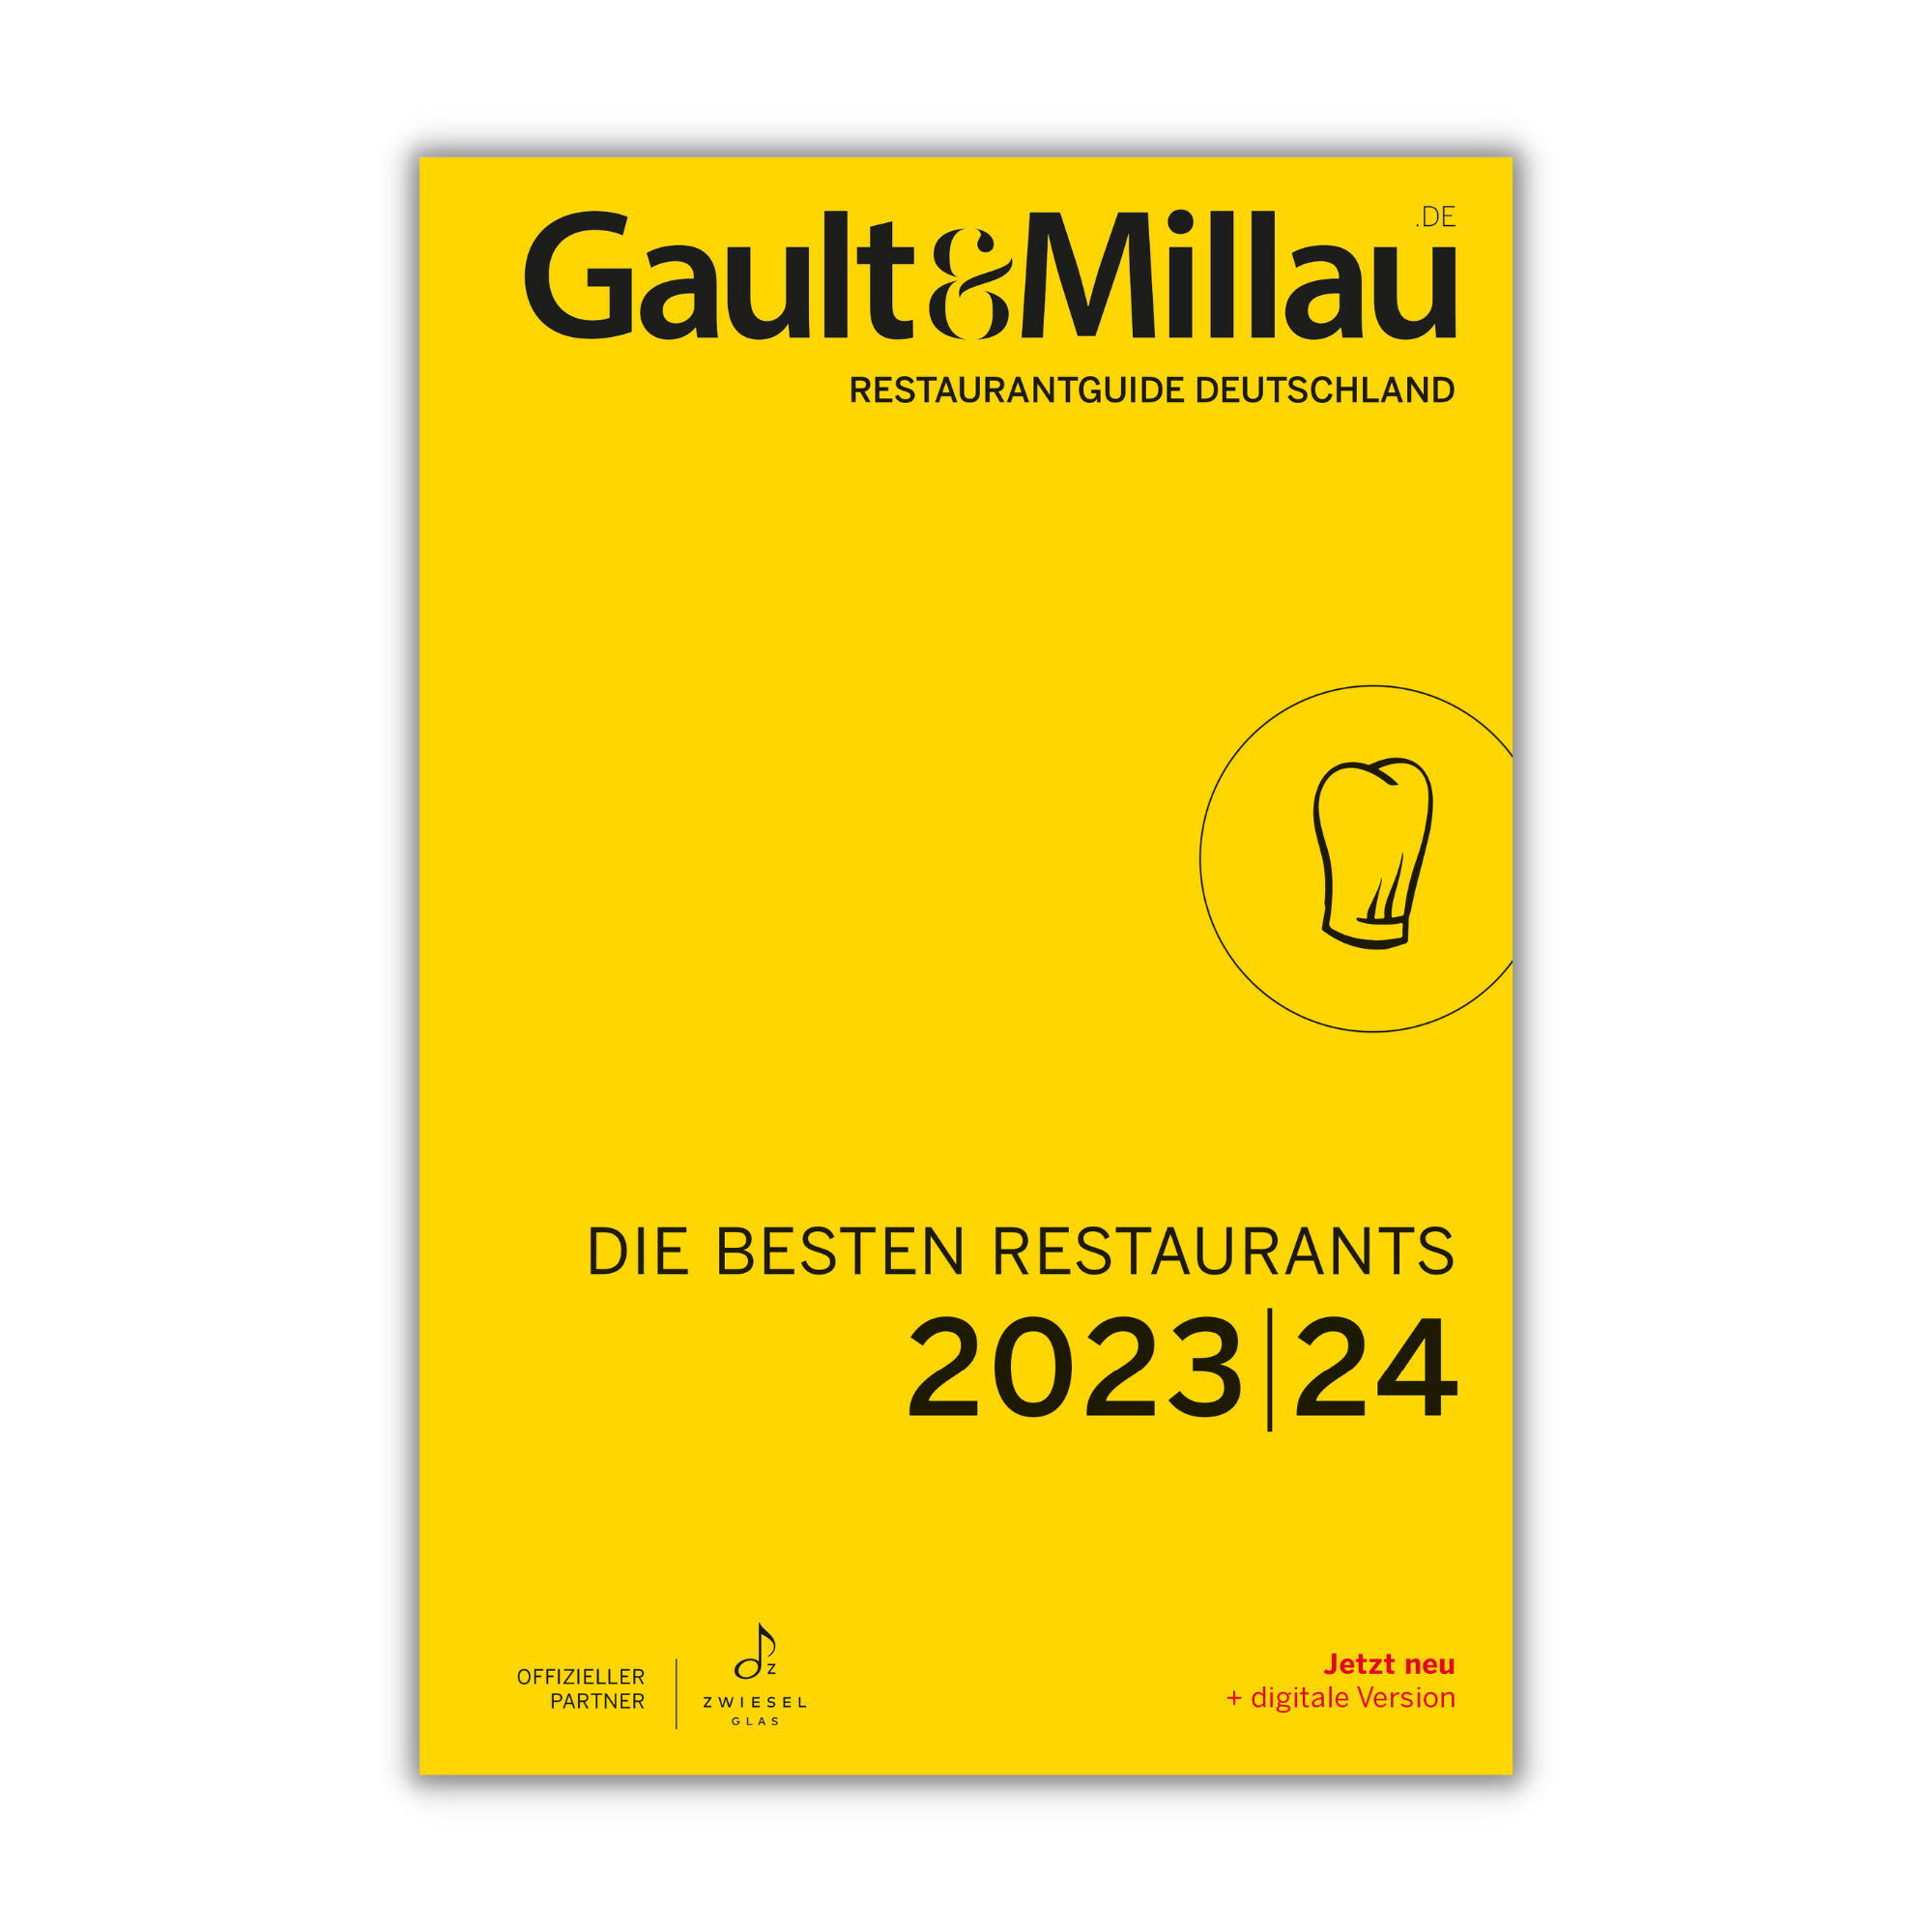 Restaurantguide Deutschland – Die besten Restaurants 2023I24